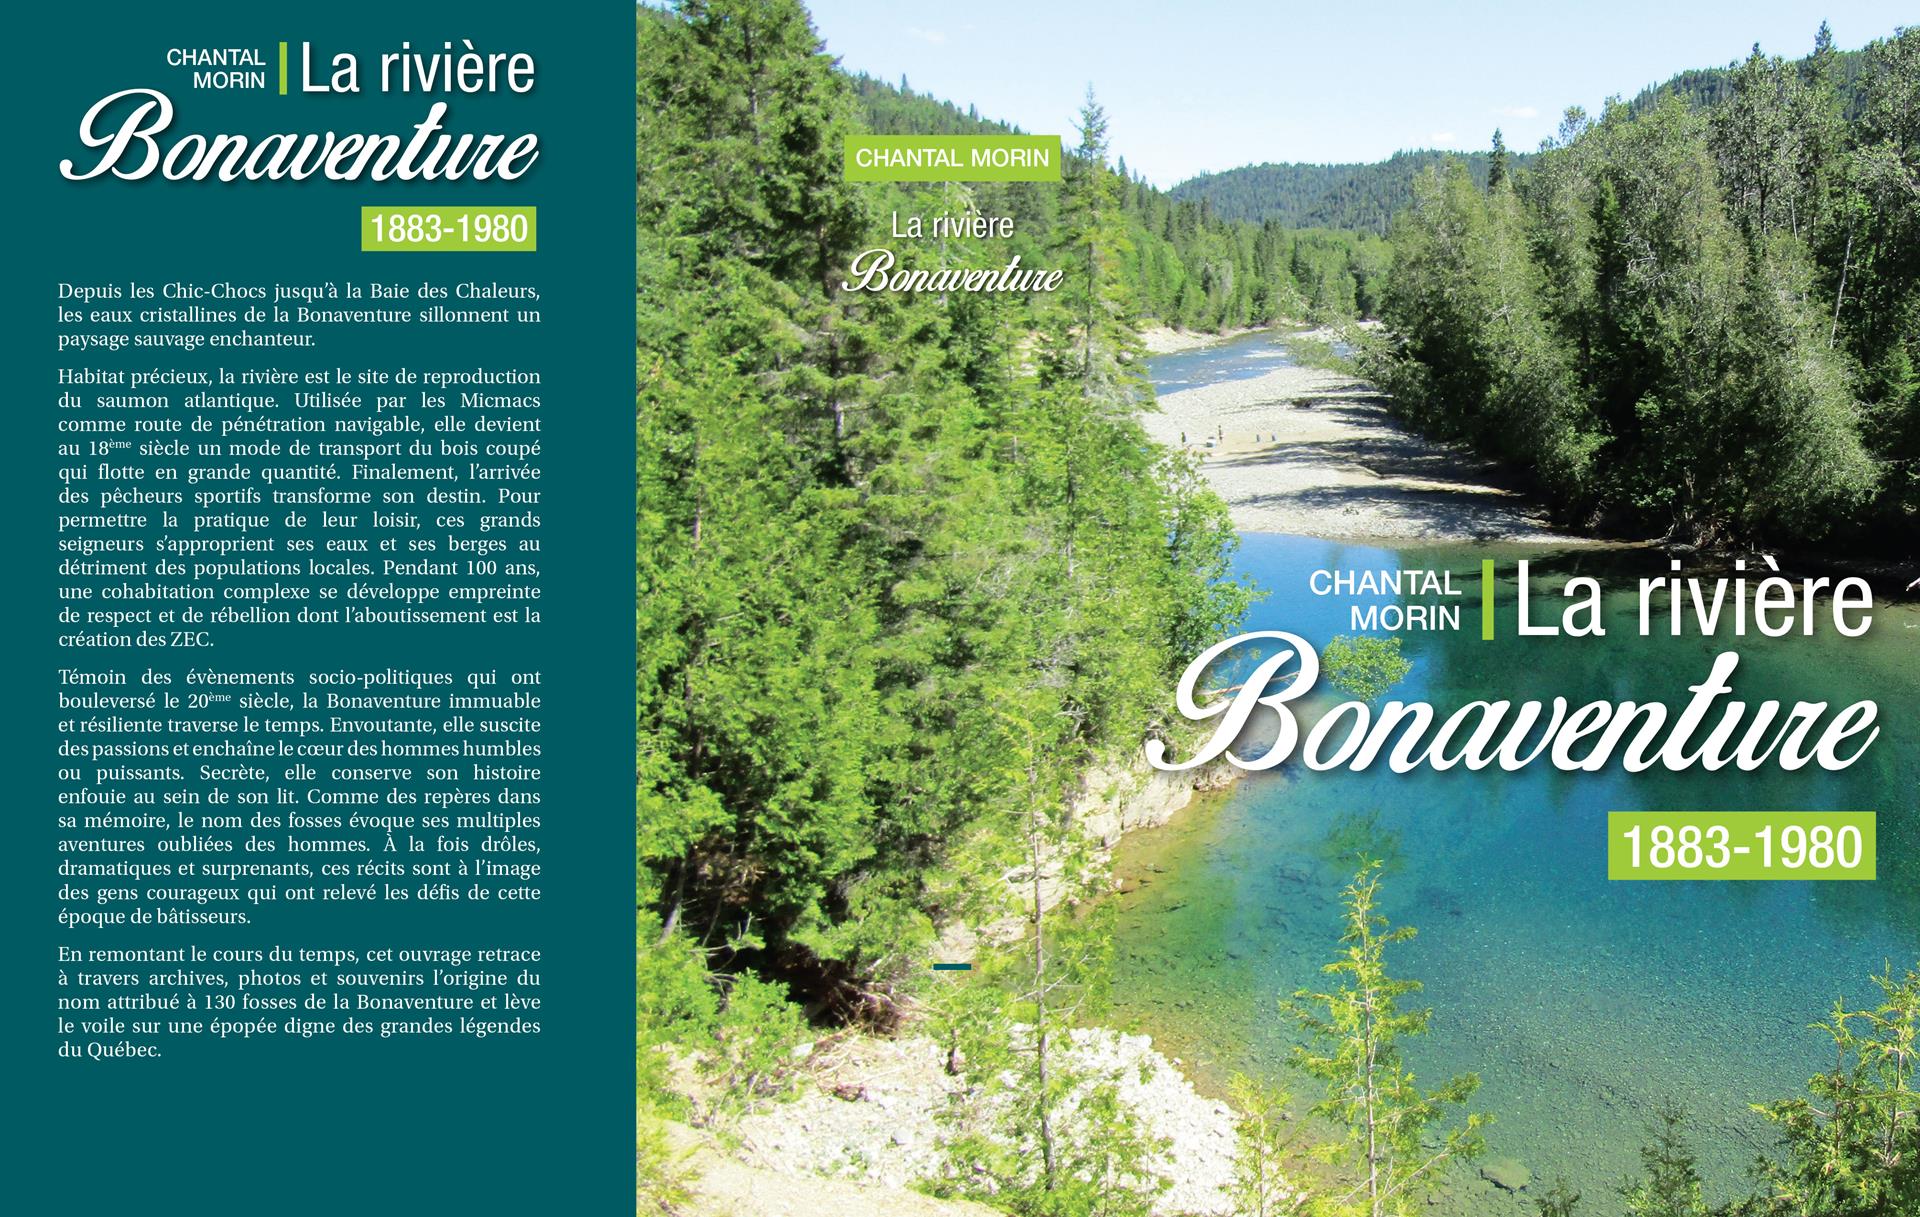 La rivière Bonaventure… de 1883 à 1980